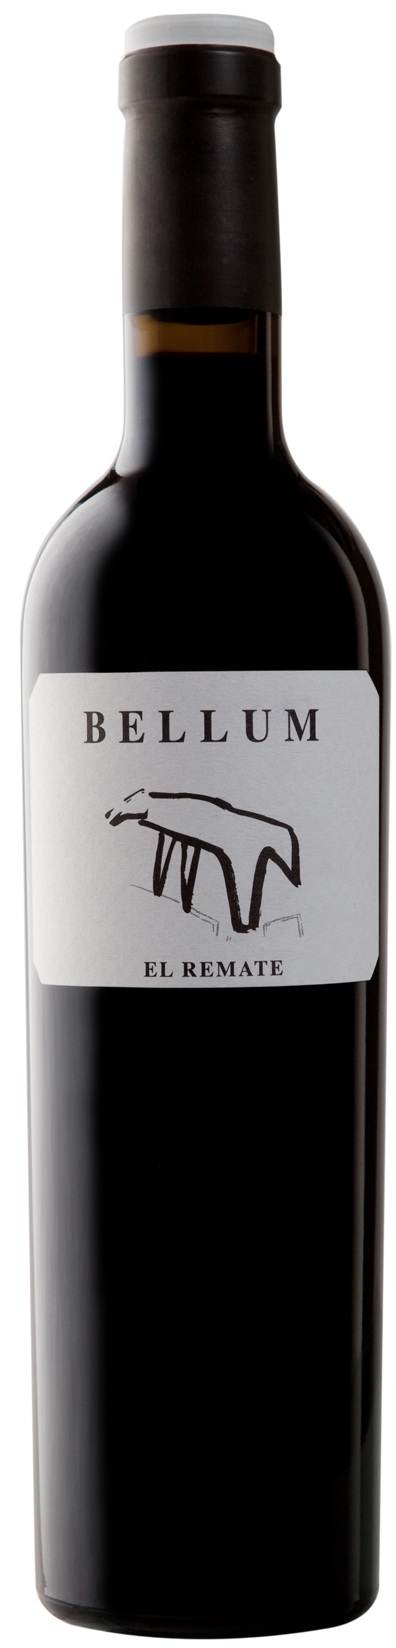 Imagen de la botella de Vino Bellum "El Remate"